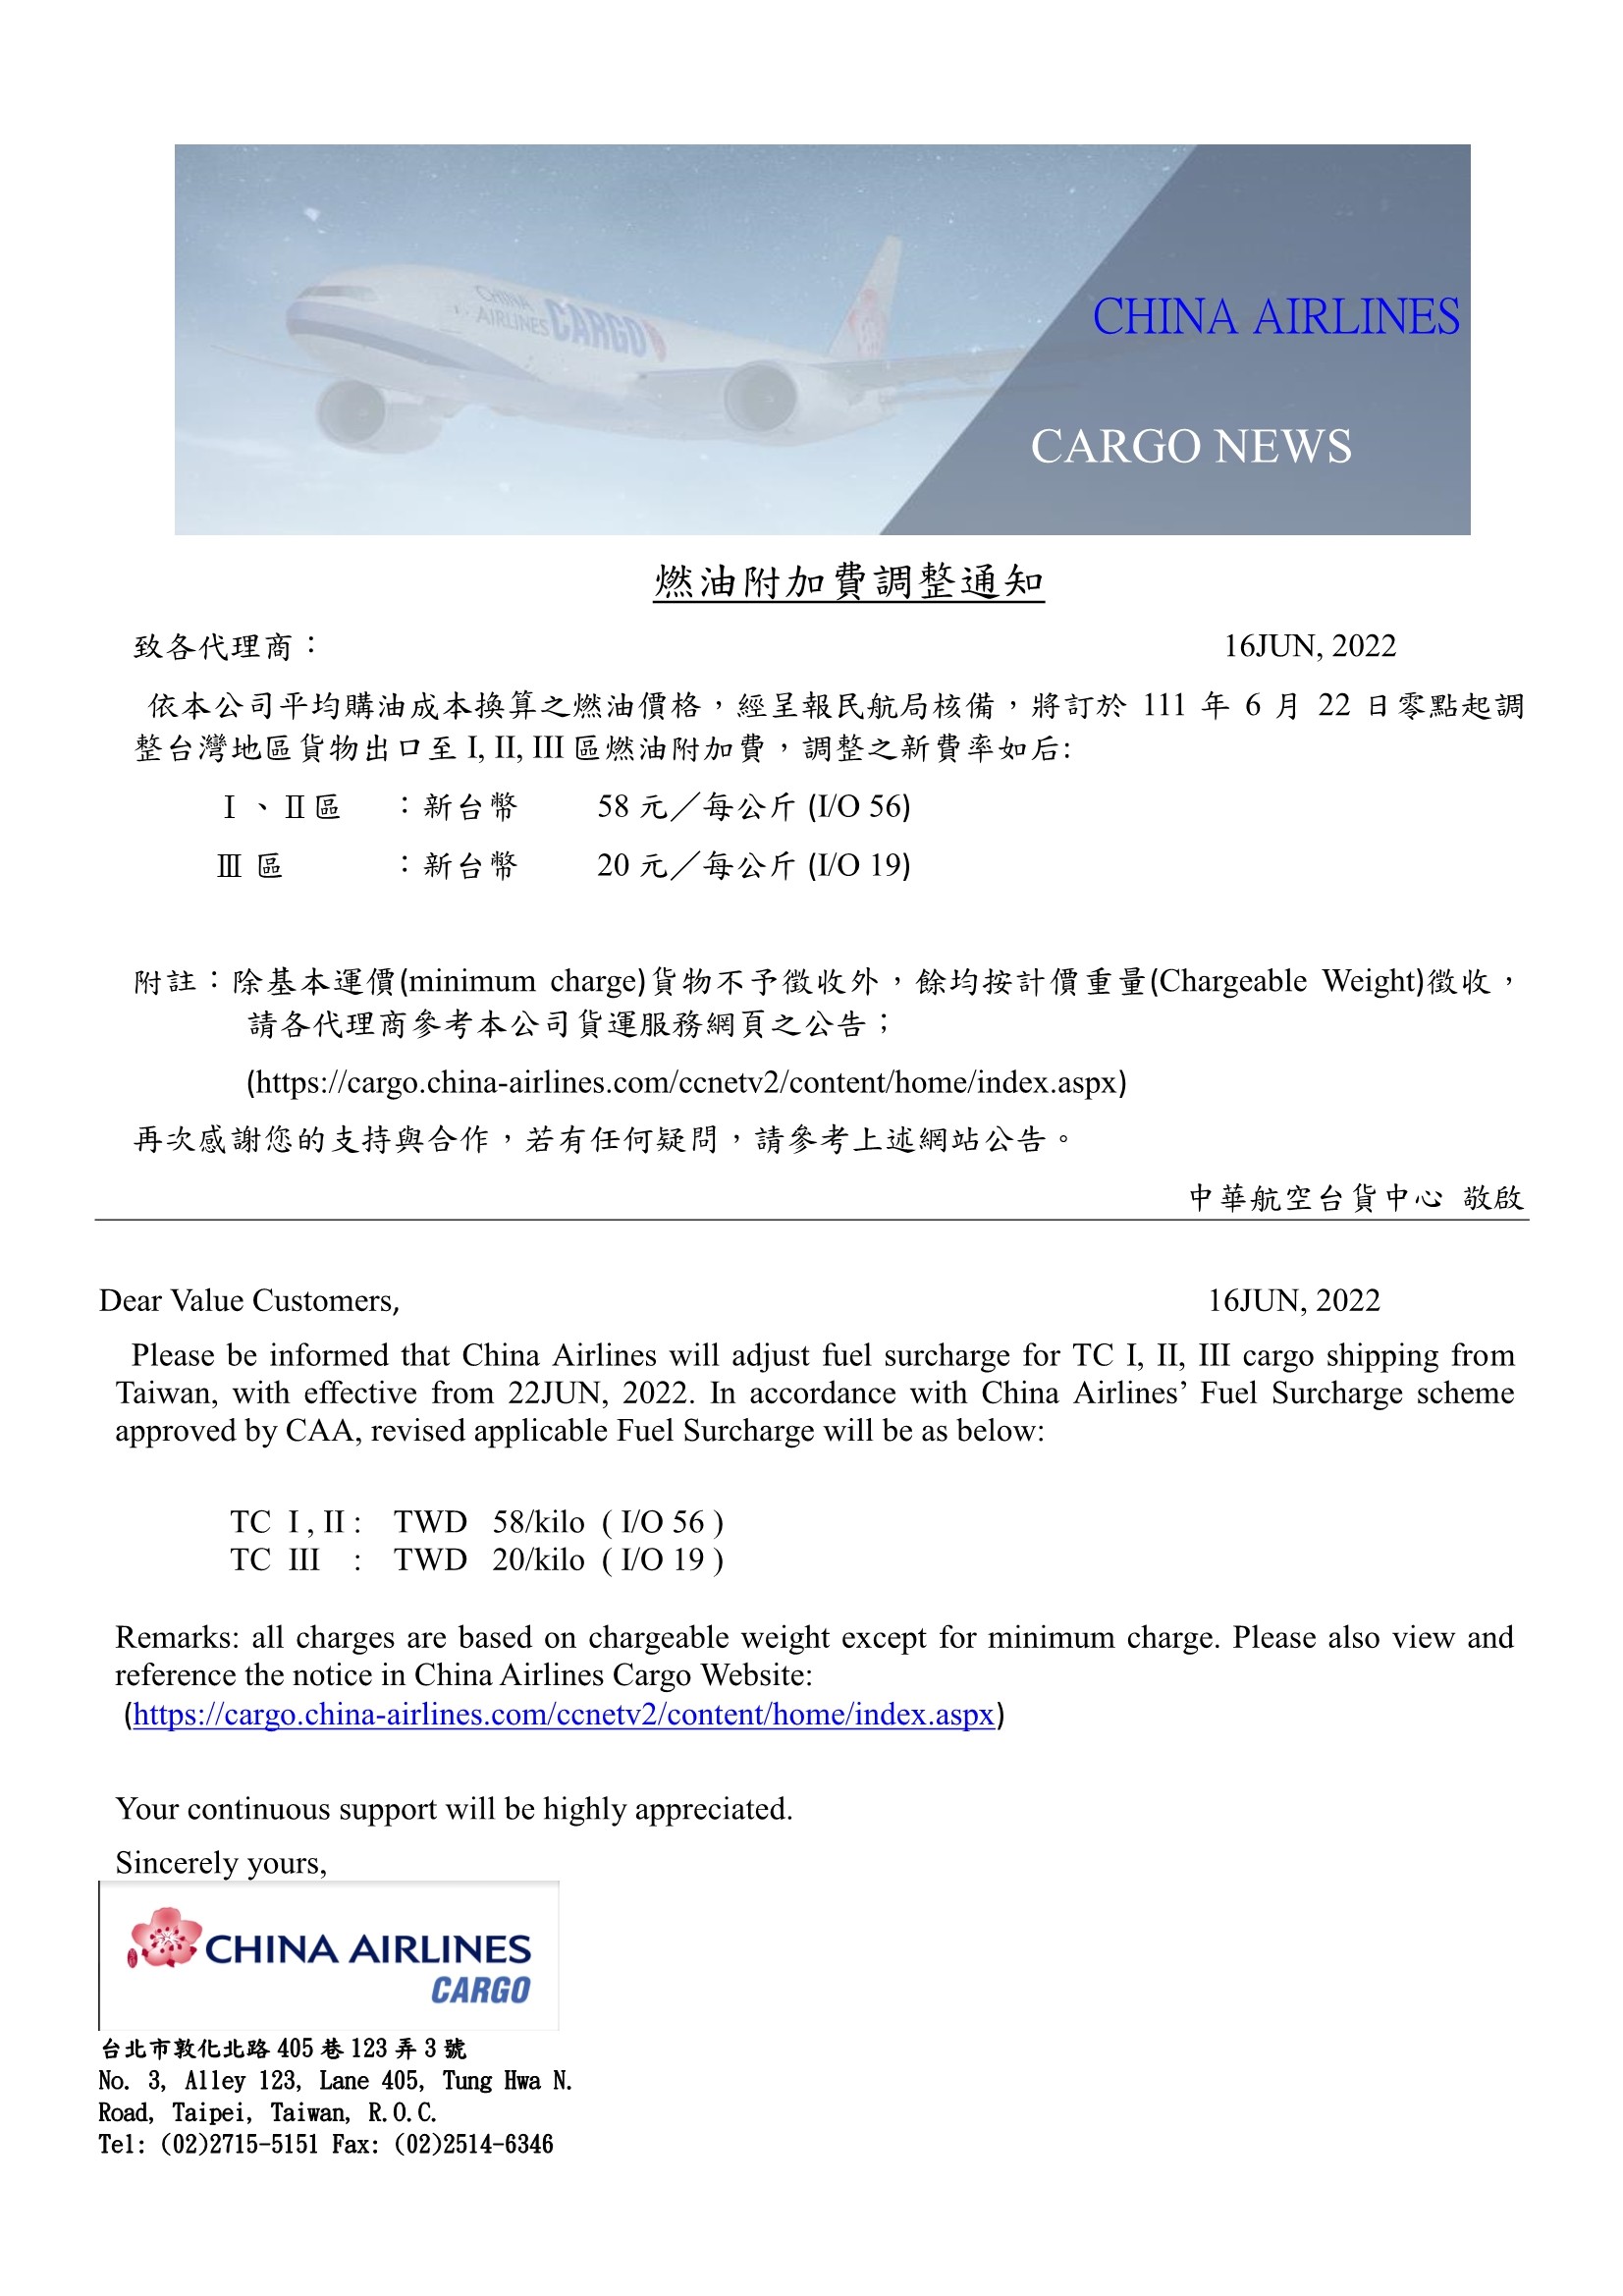 中華航空2022年6月22日台灣區貨運燃油附加費調整公告.jpg